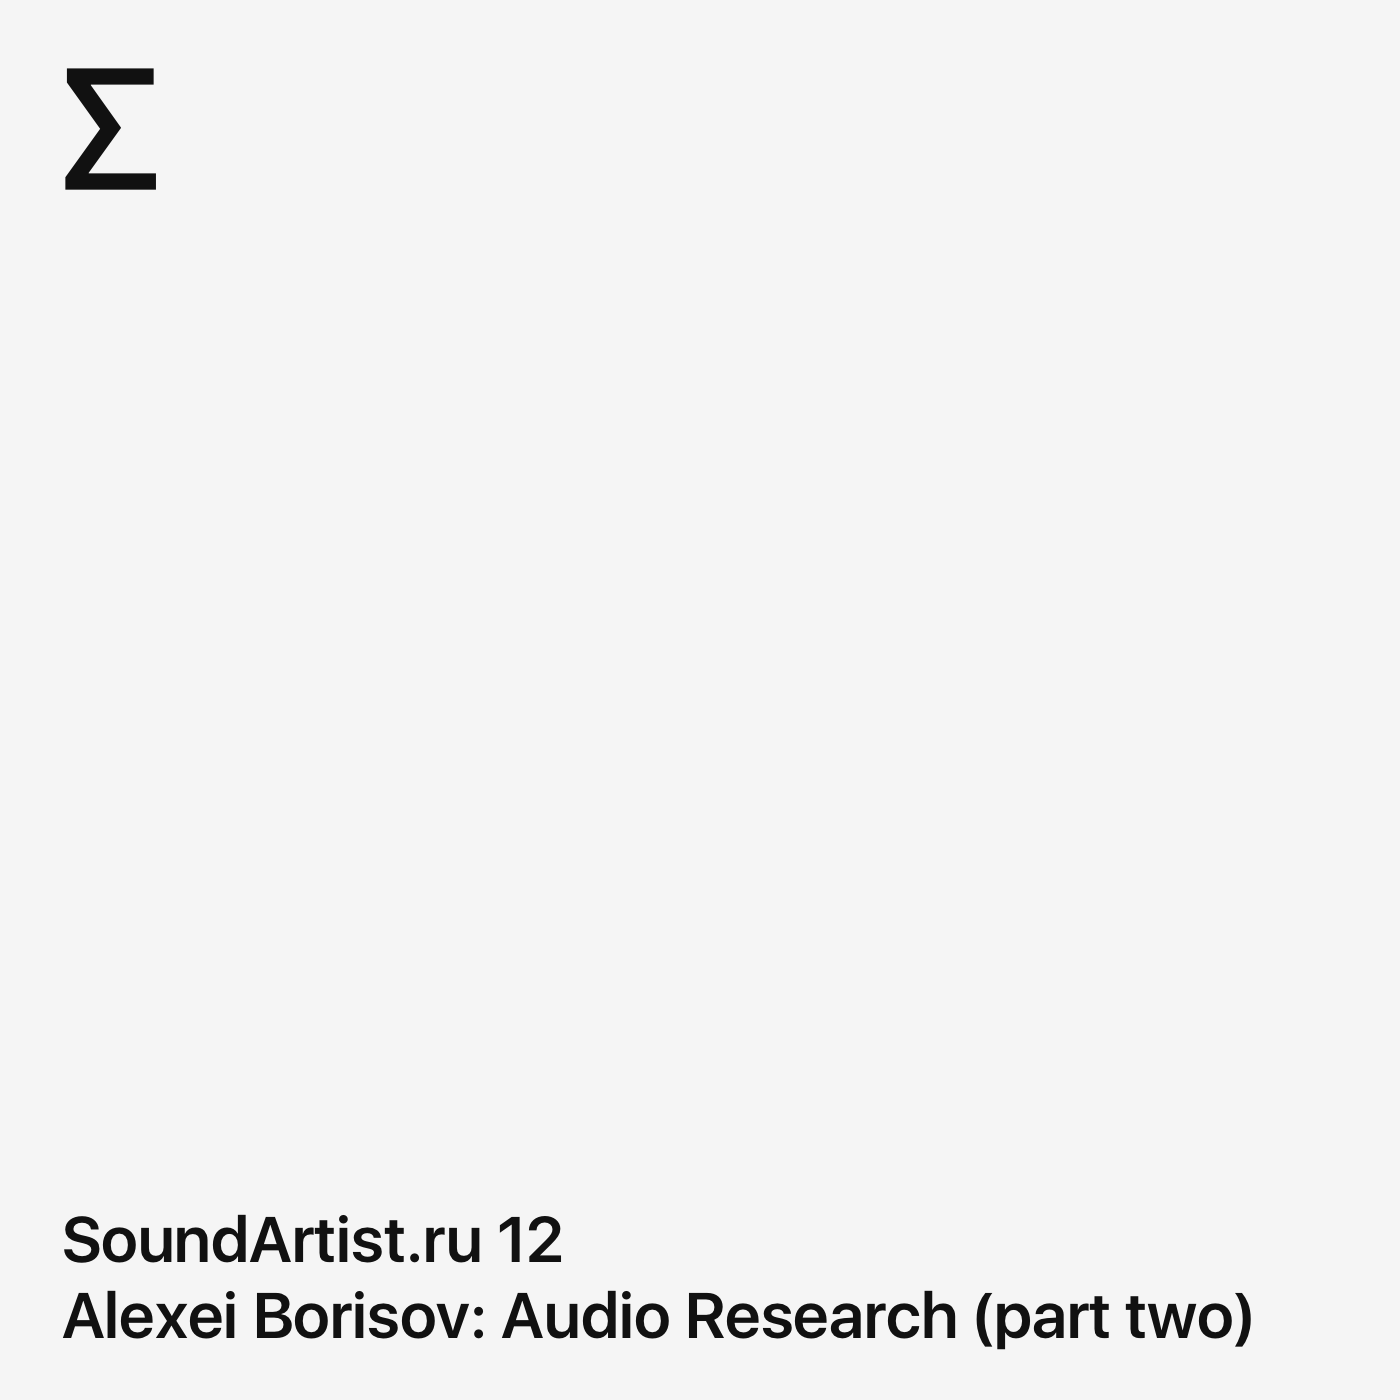 SoundArtist.ru 12 – Alexei Borisov: Audio Research (part two)